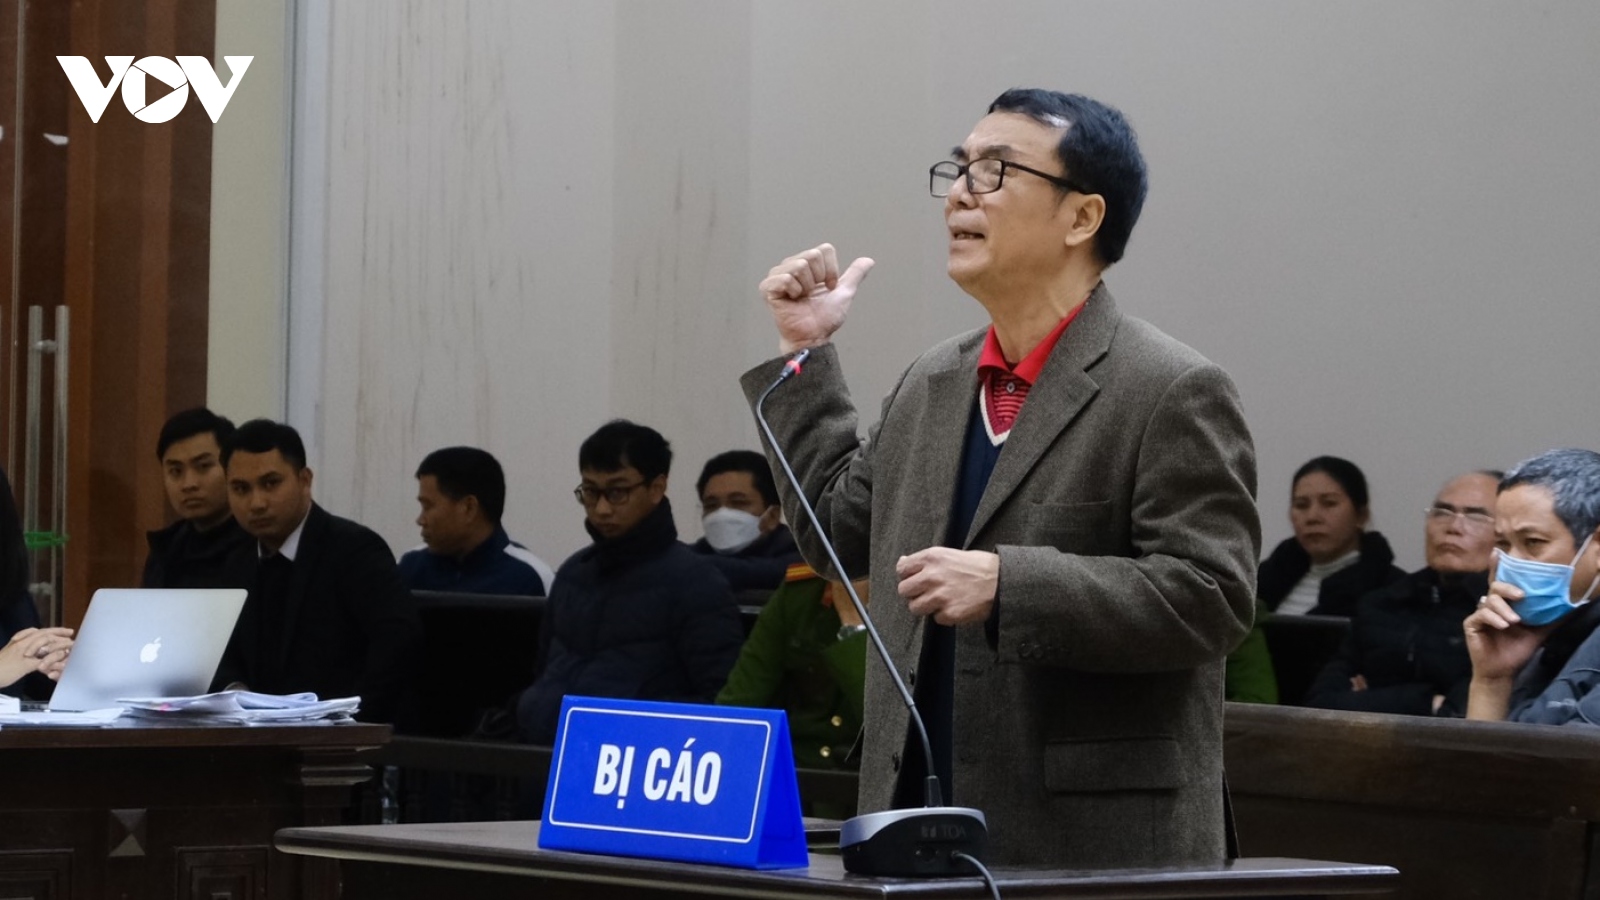 Cựu Cục phó Trần Hùng bị tuyên y án 9 năm tù về tội nhận hối lộ